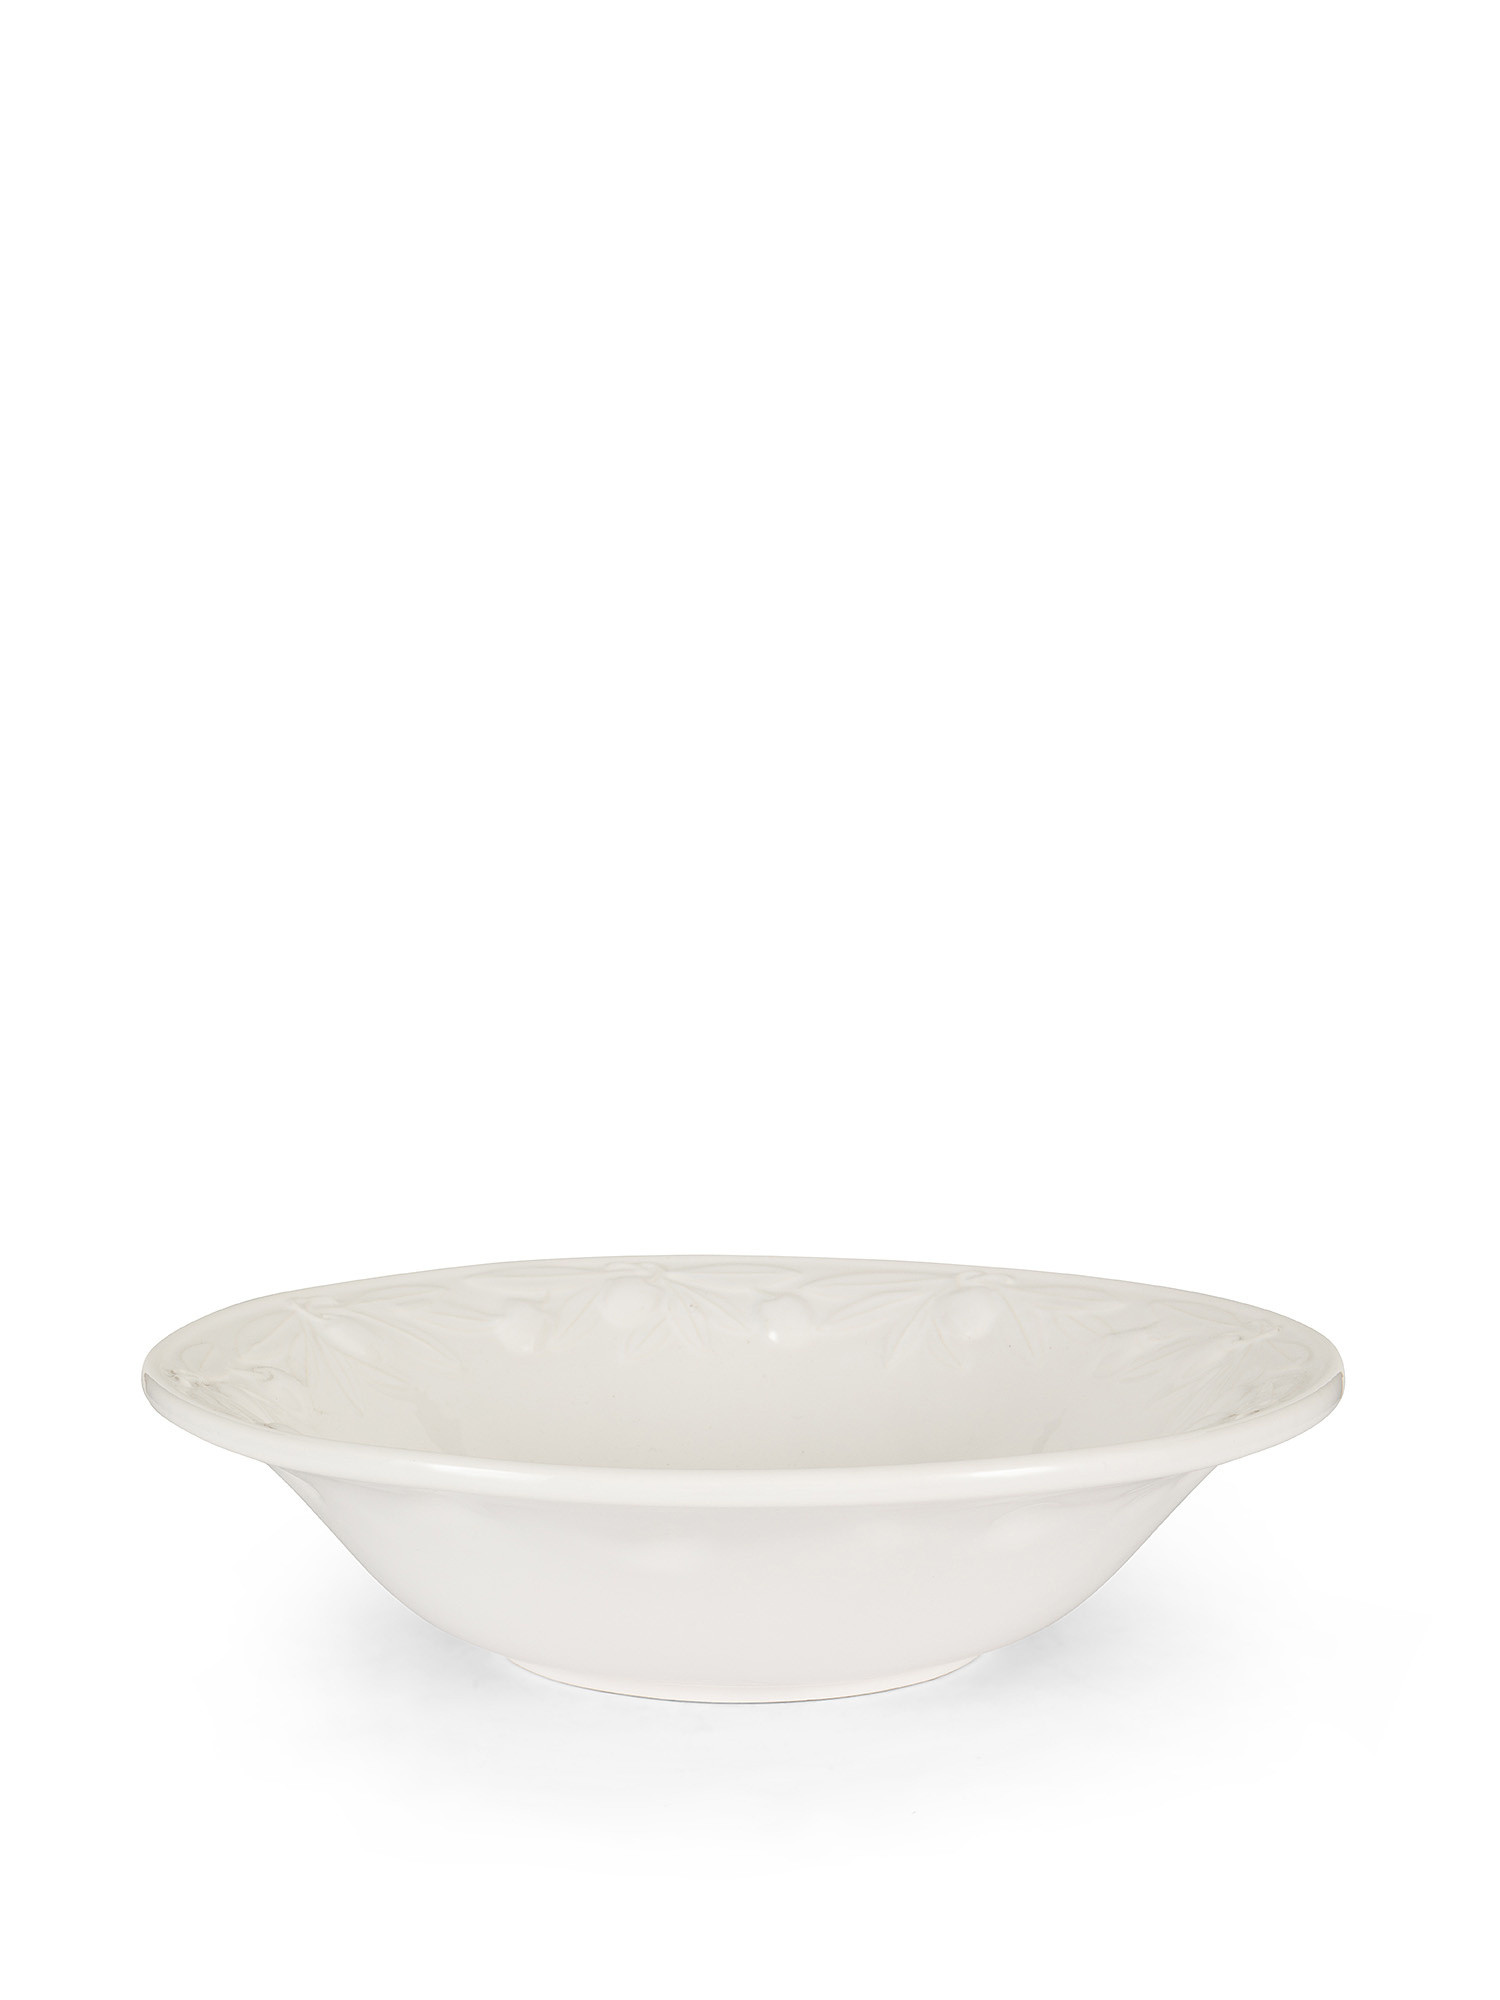 Coppa ceramica dettaglio olive, Bianco, large image number 0